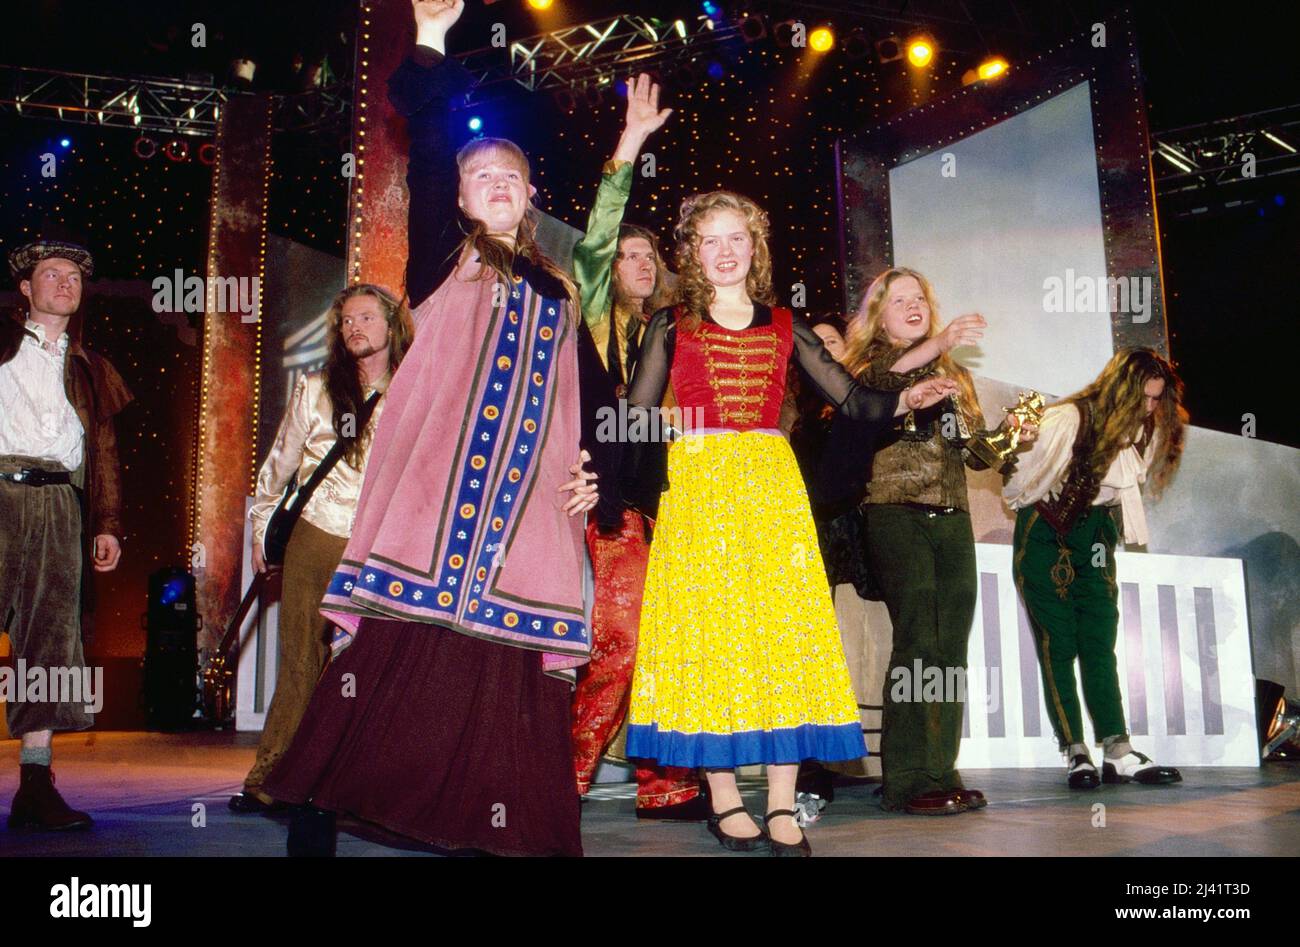 Michael Patrick, Joey, Maite, Barby, Angelo und  Kathy Ann von der Musikgruppe The Kelly Family bedanken sich beim Publikum nach einem Auftritt, Deutschland um 1999. Stock Photo